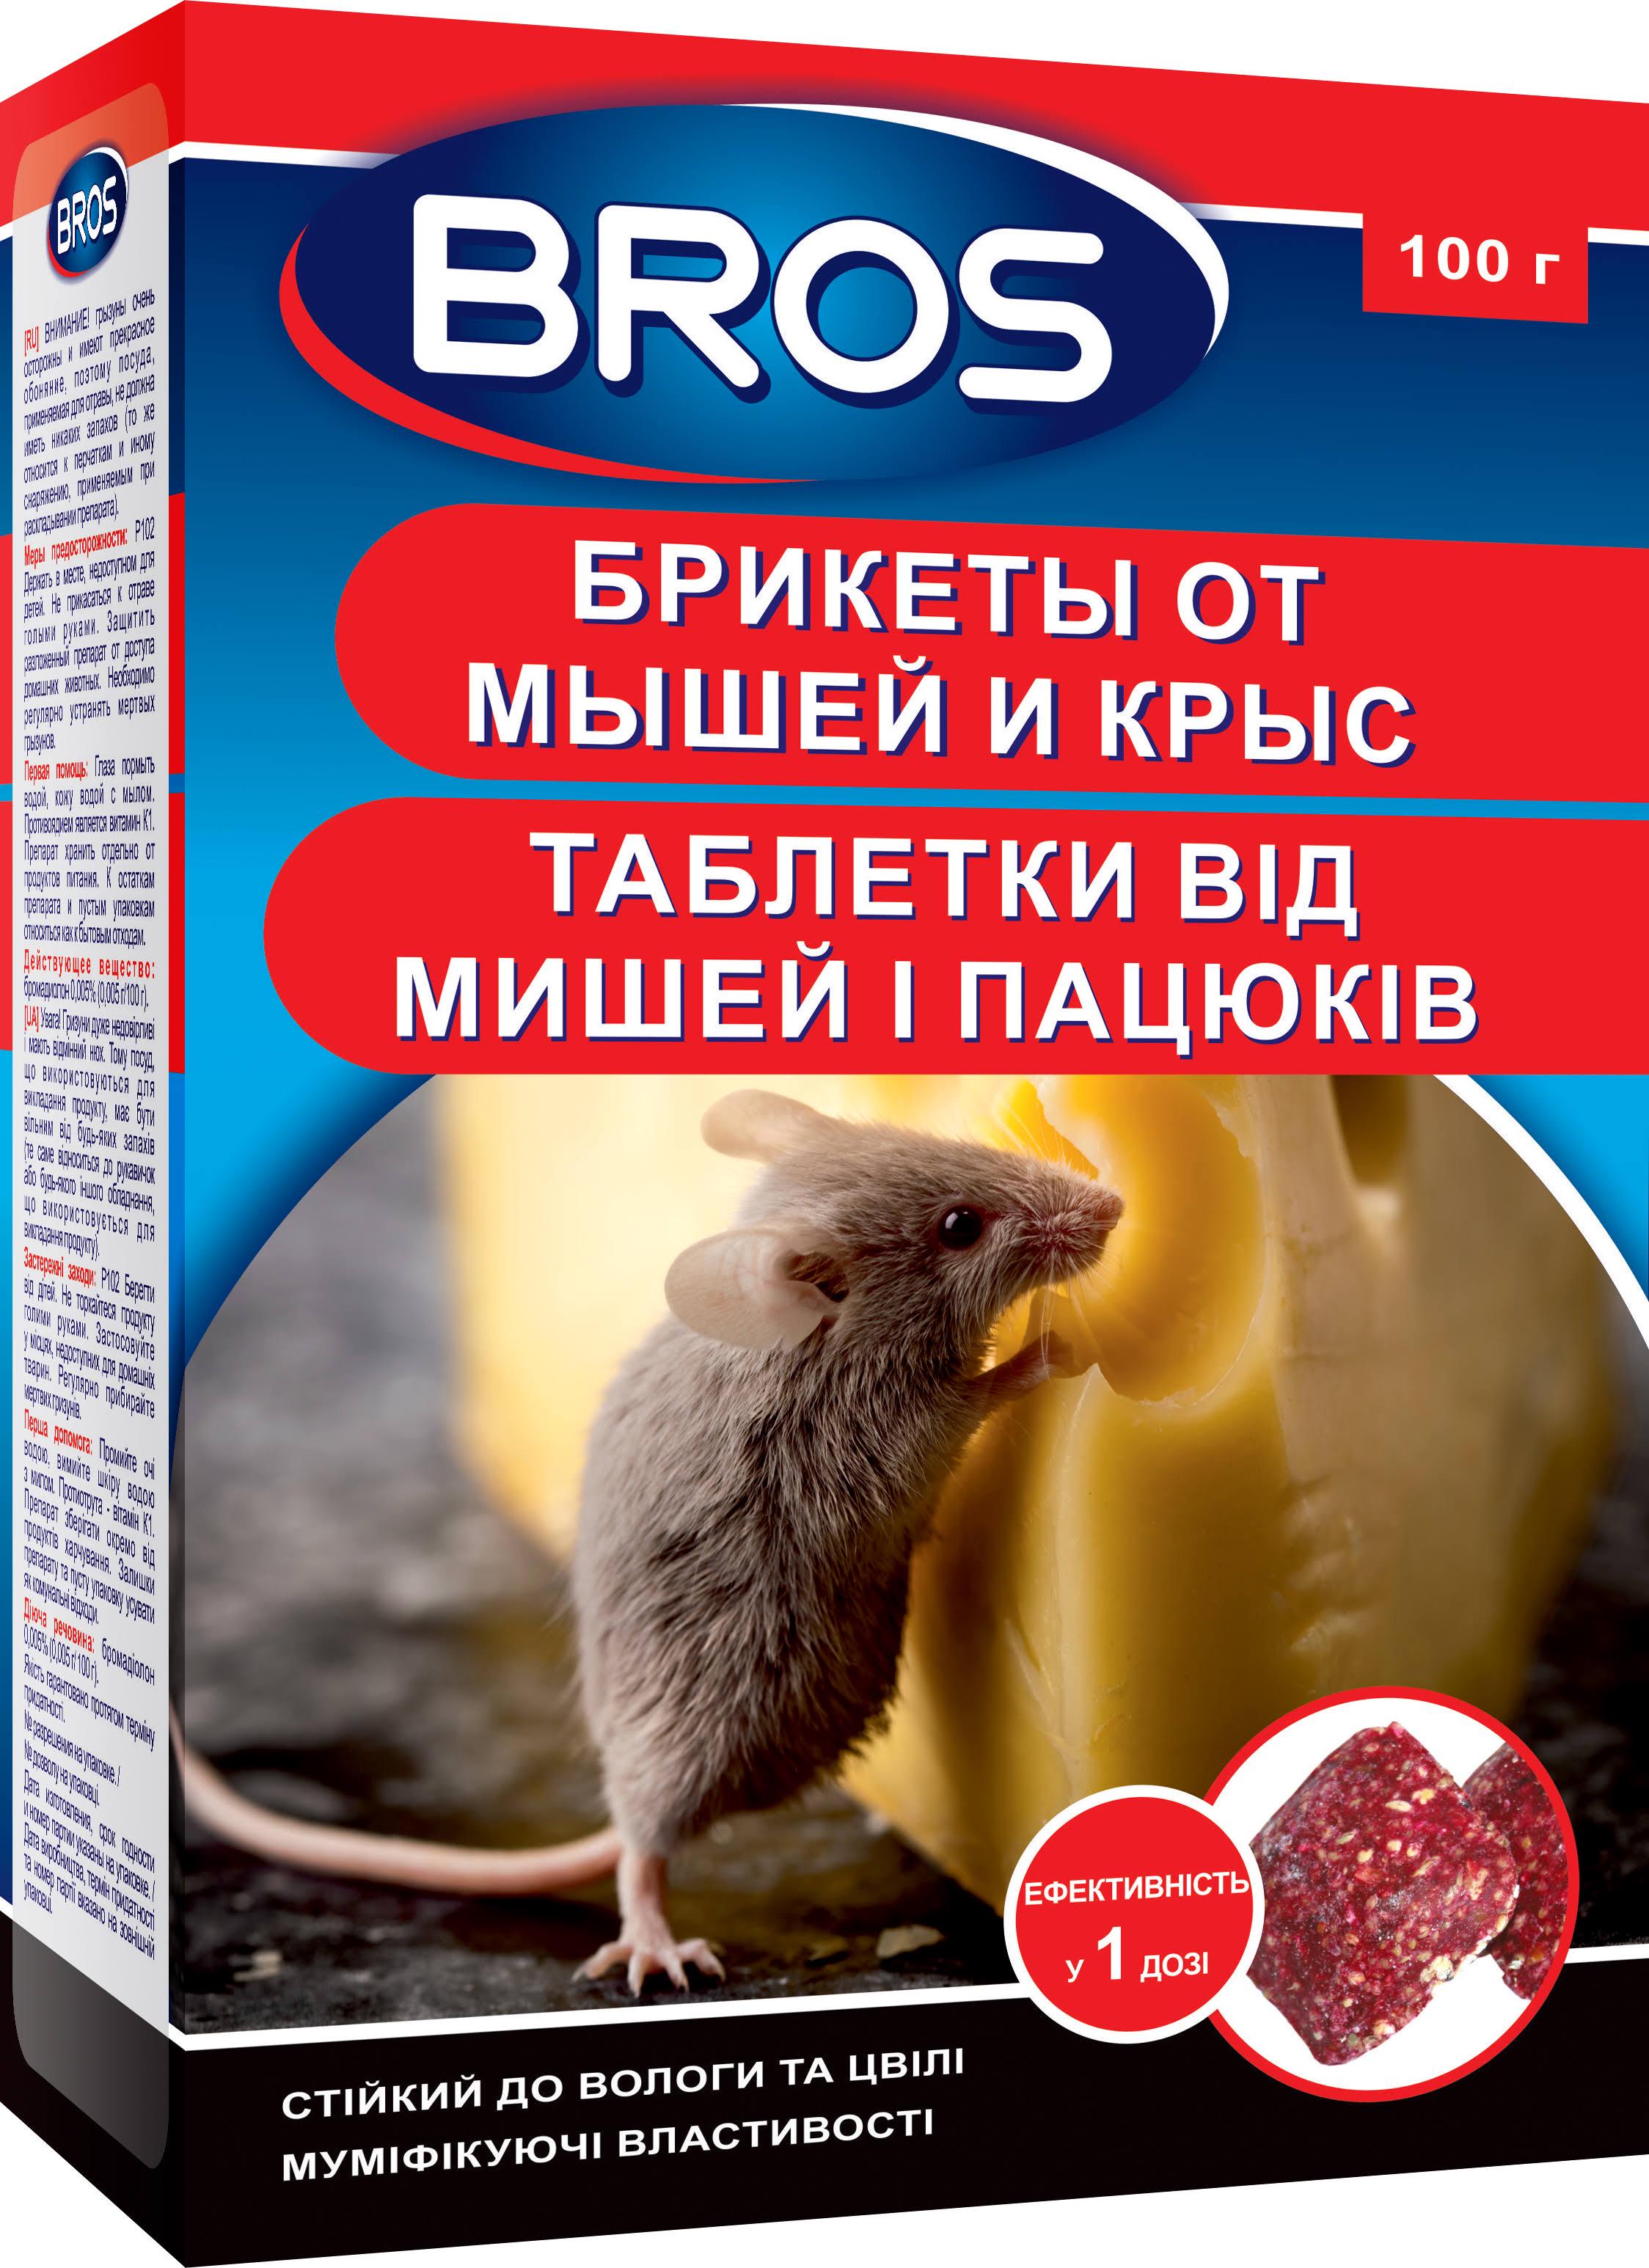 Брикеты от мышей и крыс Bros 100 г (MKU-61590)